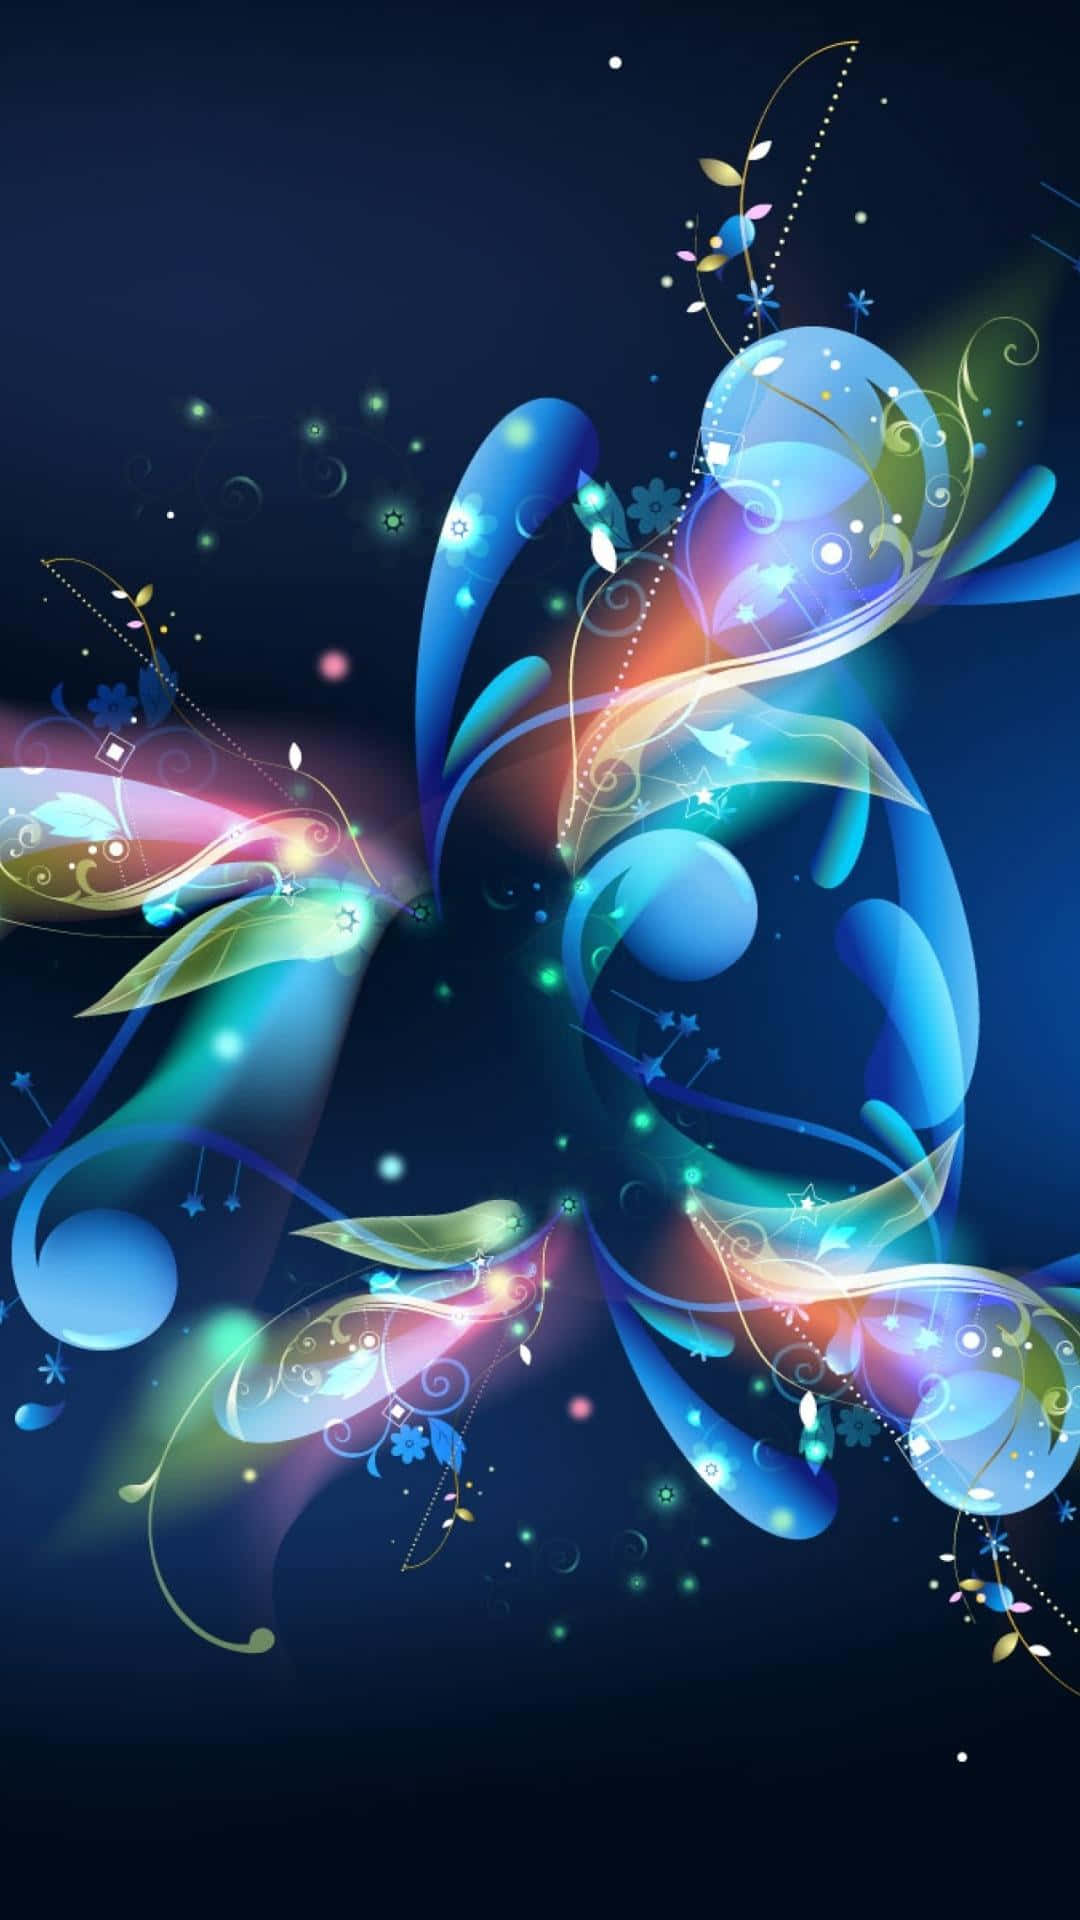 Download Captivating 3D Galaxy Illustration Wallpaper | Wallpapers.com